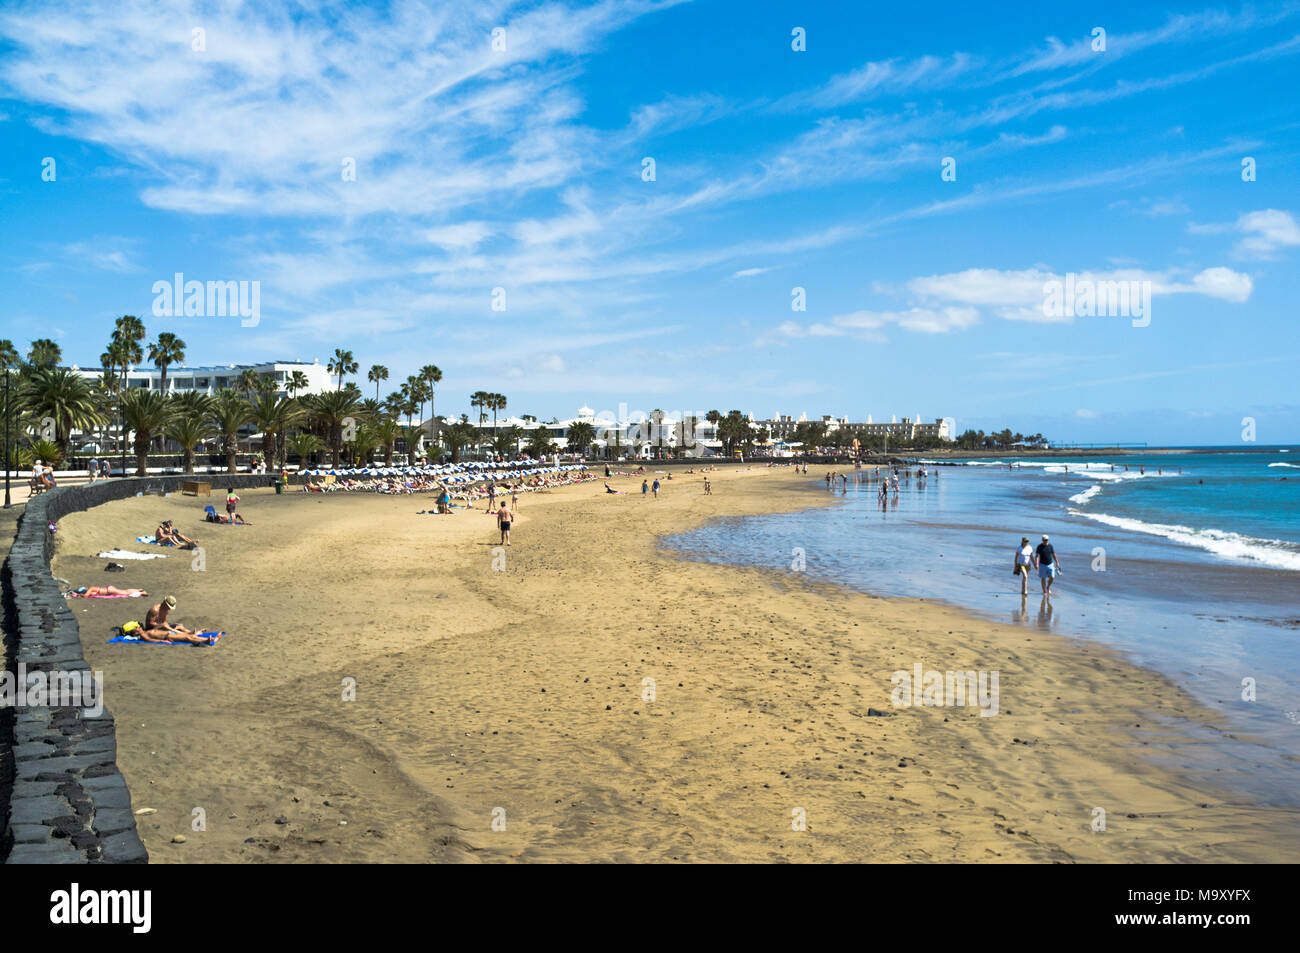 dh Beach MATAGORDA LANZAROTE persone prendere il sole camminando lungo spiagge sabbiose di mare Foto Stock